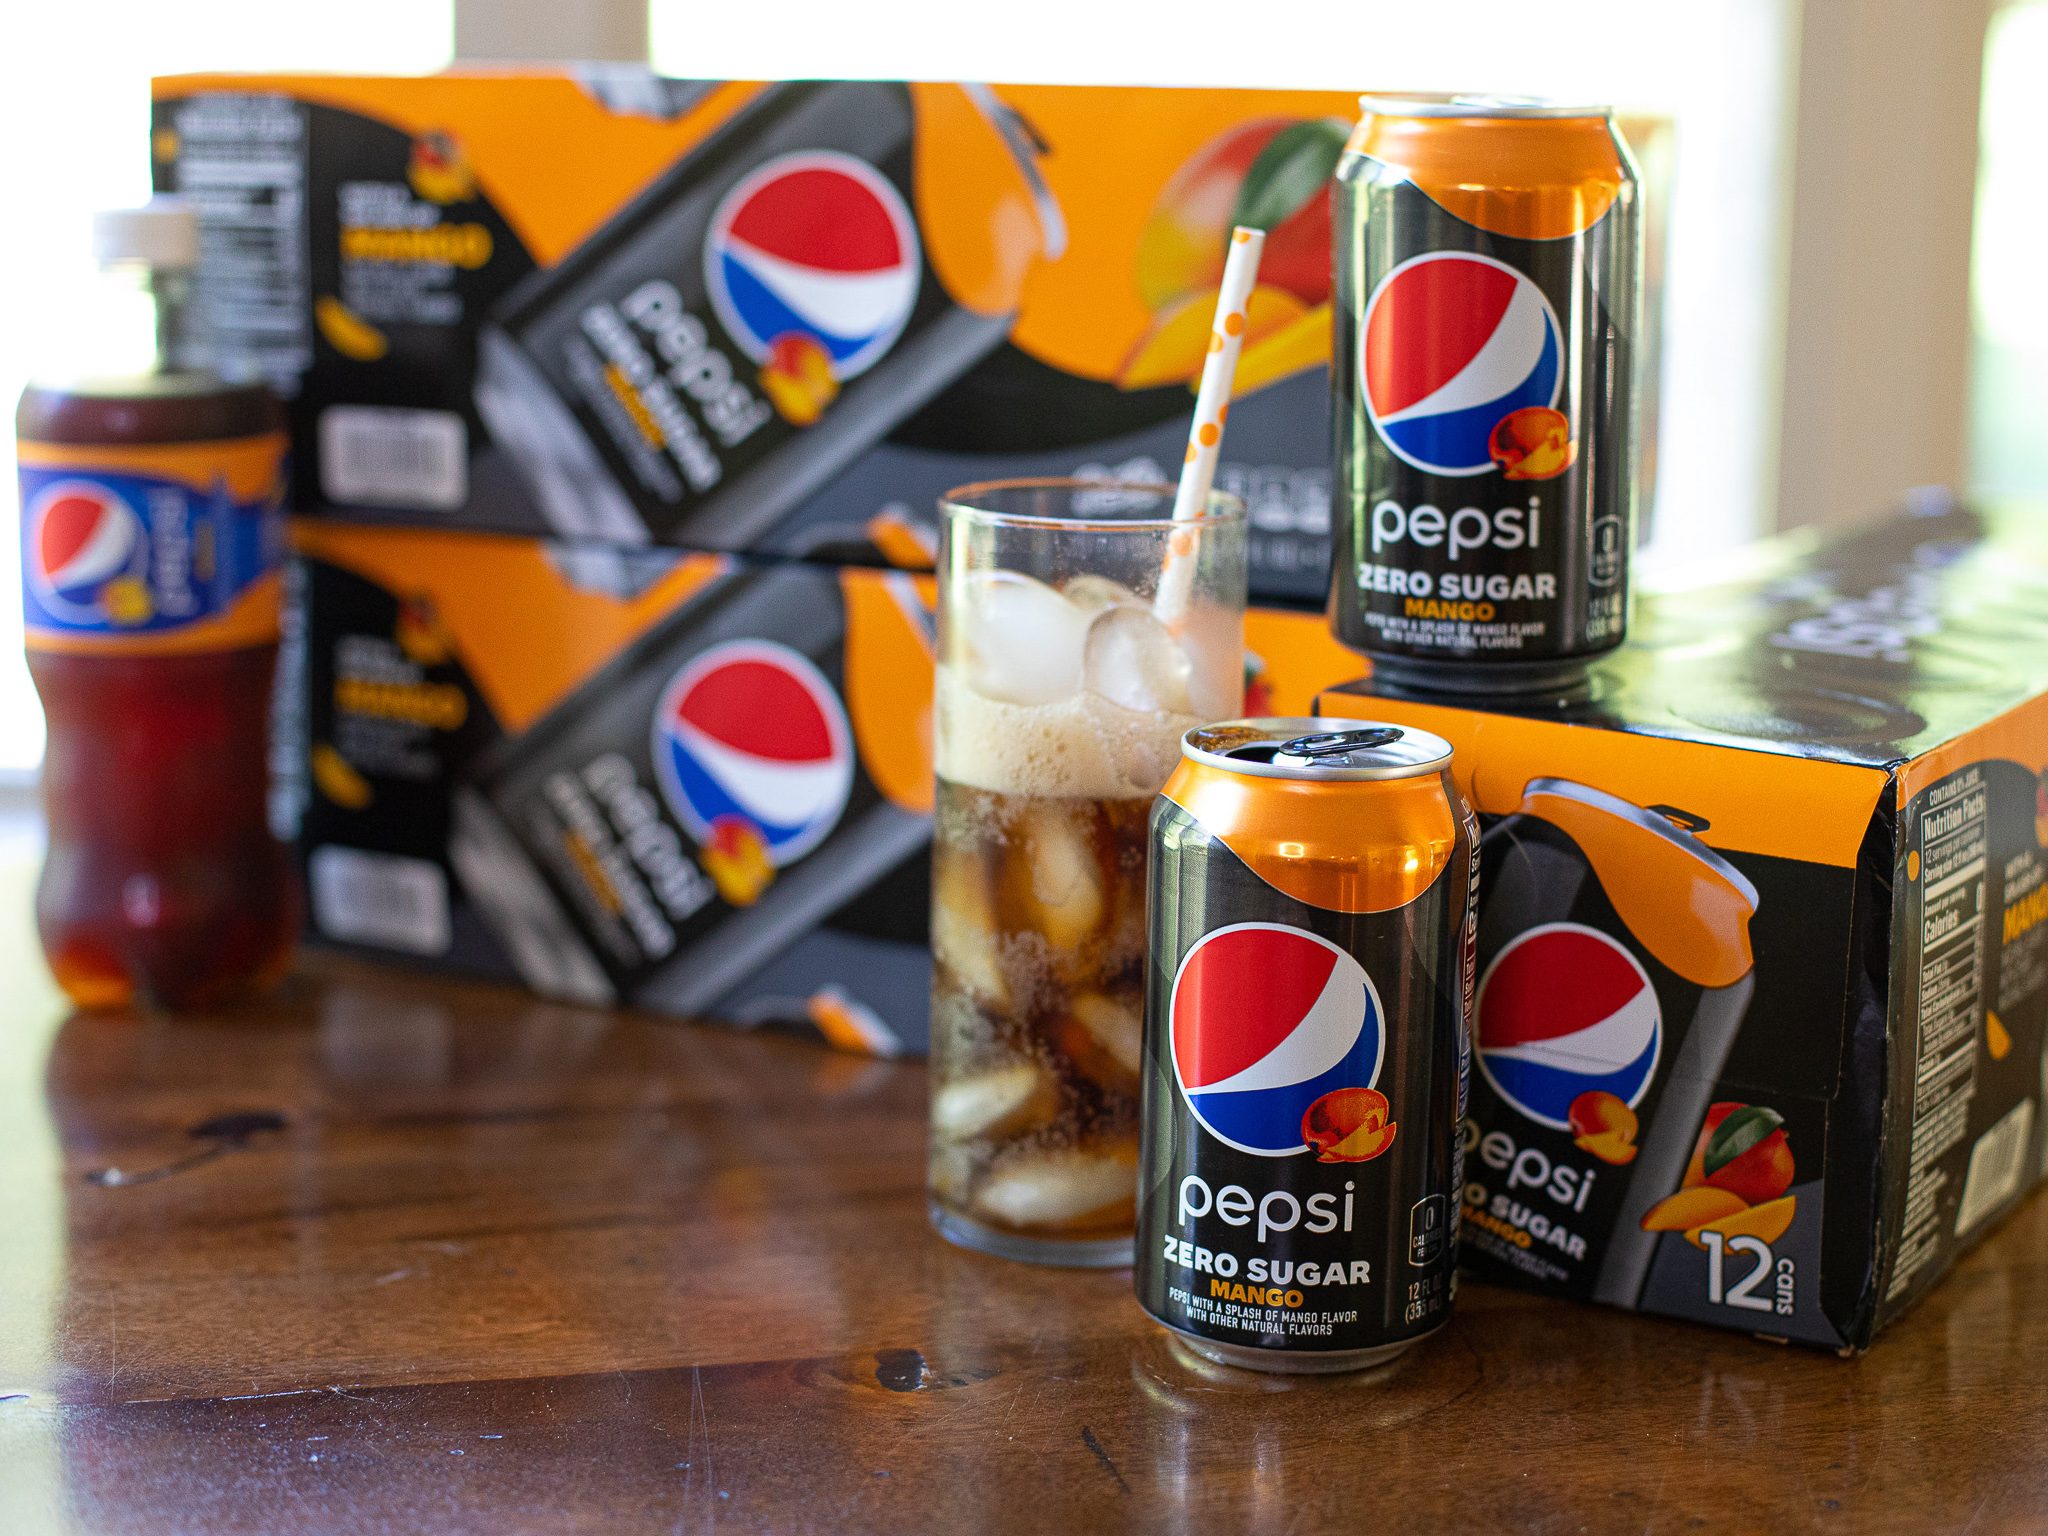 Get Pepsi Zero Sugar 15-Packs For Just $2.67 At Kroger (Regular Price $7.99)